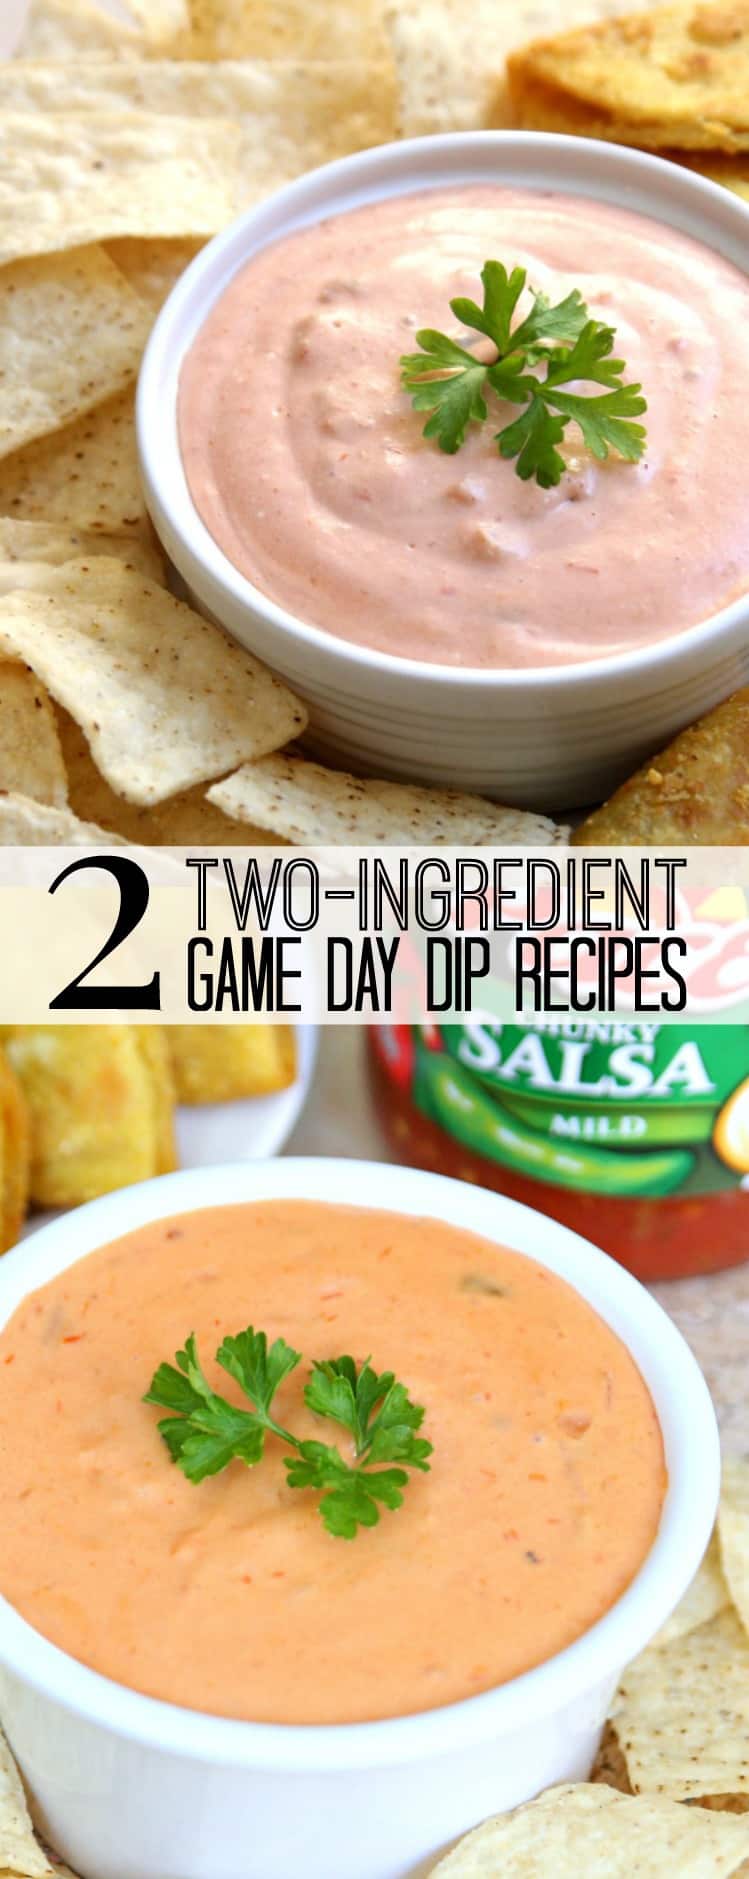 2 Two-Ingredient Dip Recipes